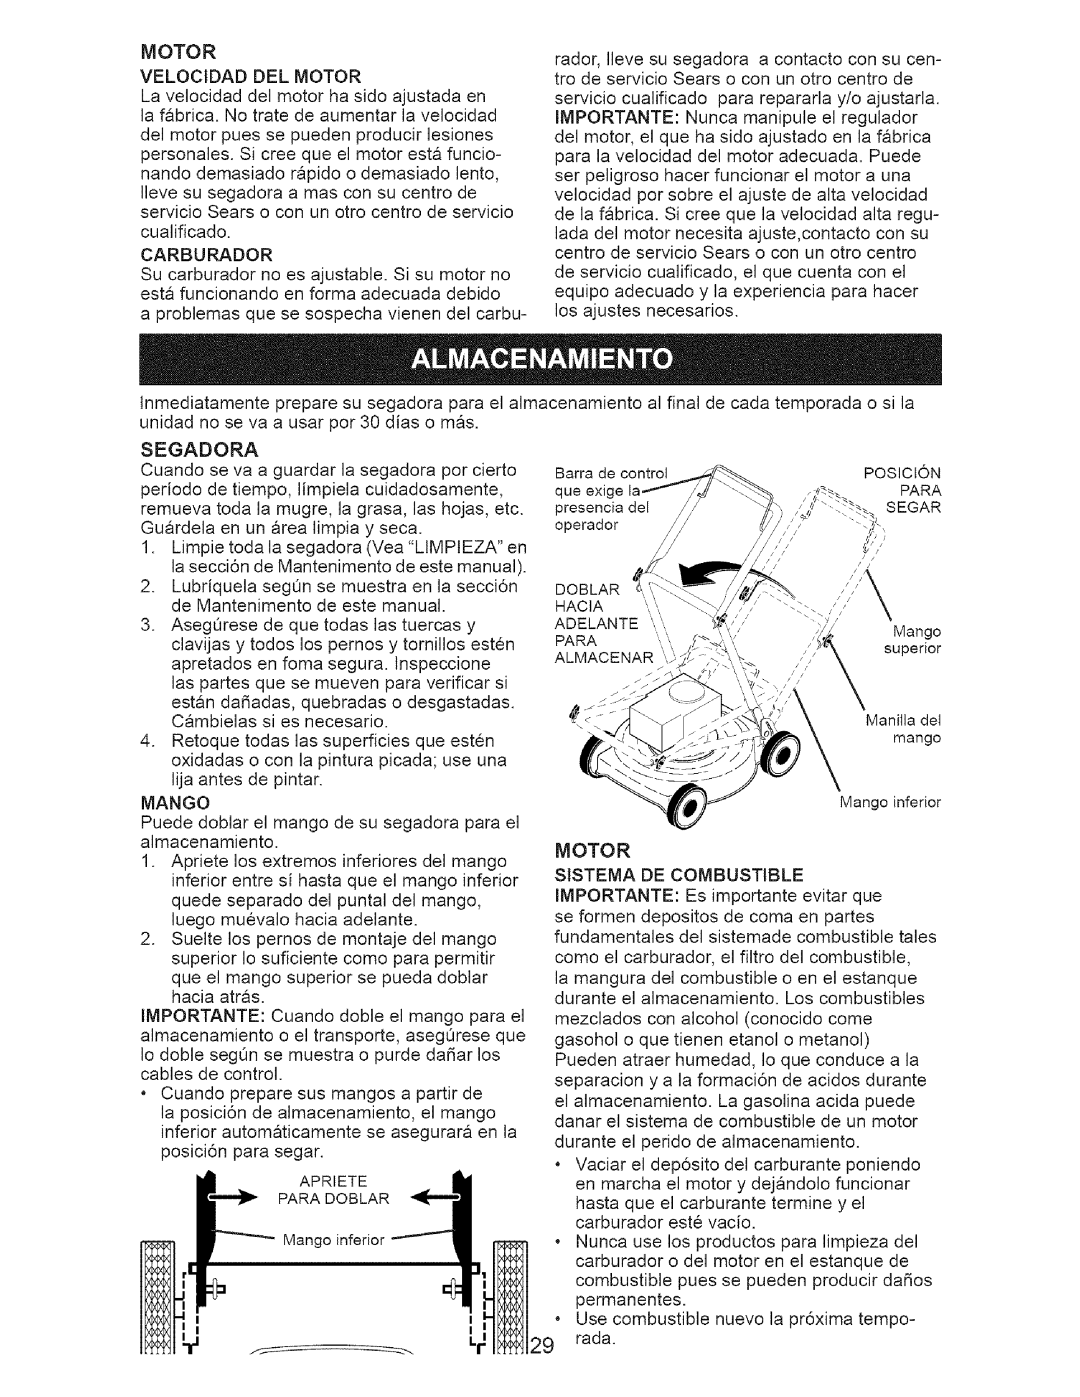 Craftsman 38514 owner manual Motor Velocidad Del Motor, Mango, Motor Sistema De Combustible 